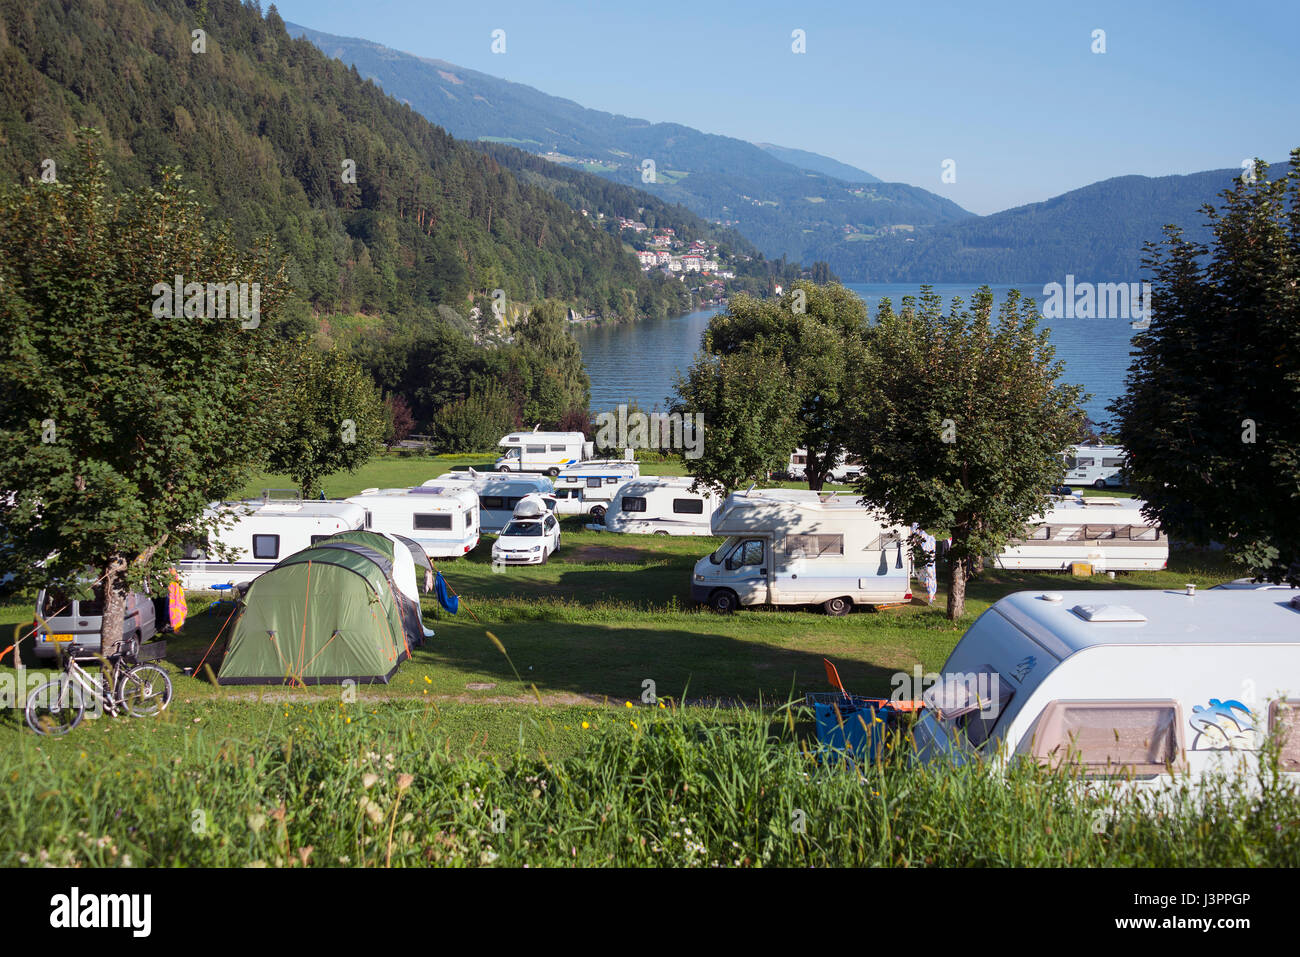 Camping site, Pesenthein, Millstatt, Lake Millstatt, Austria Stock ...